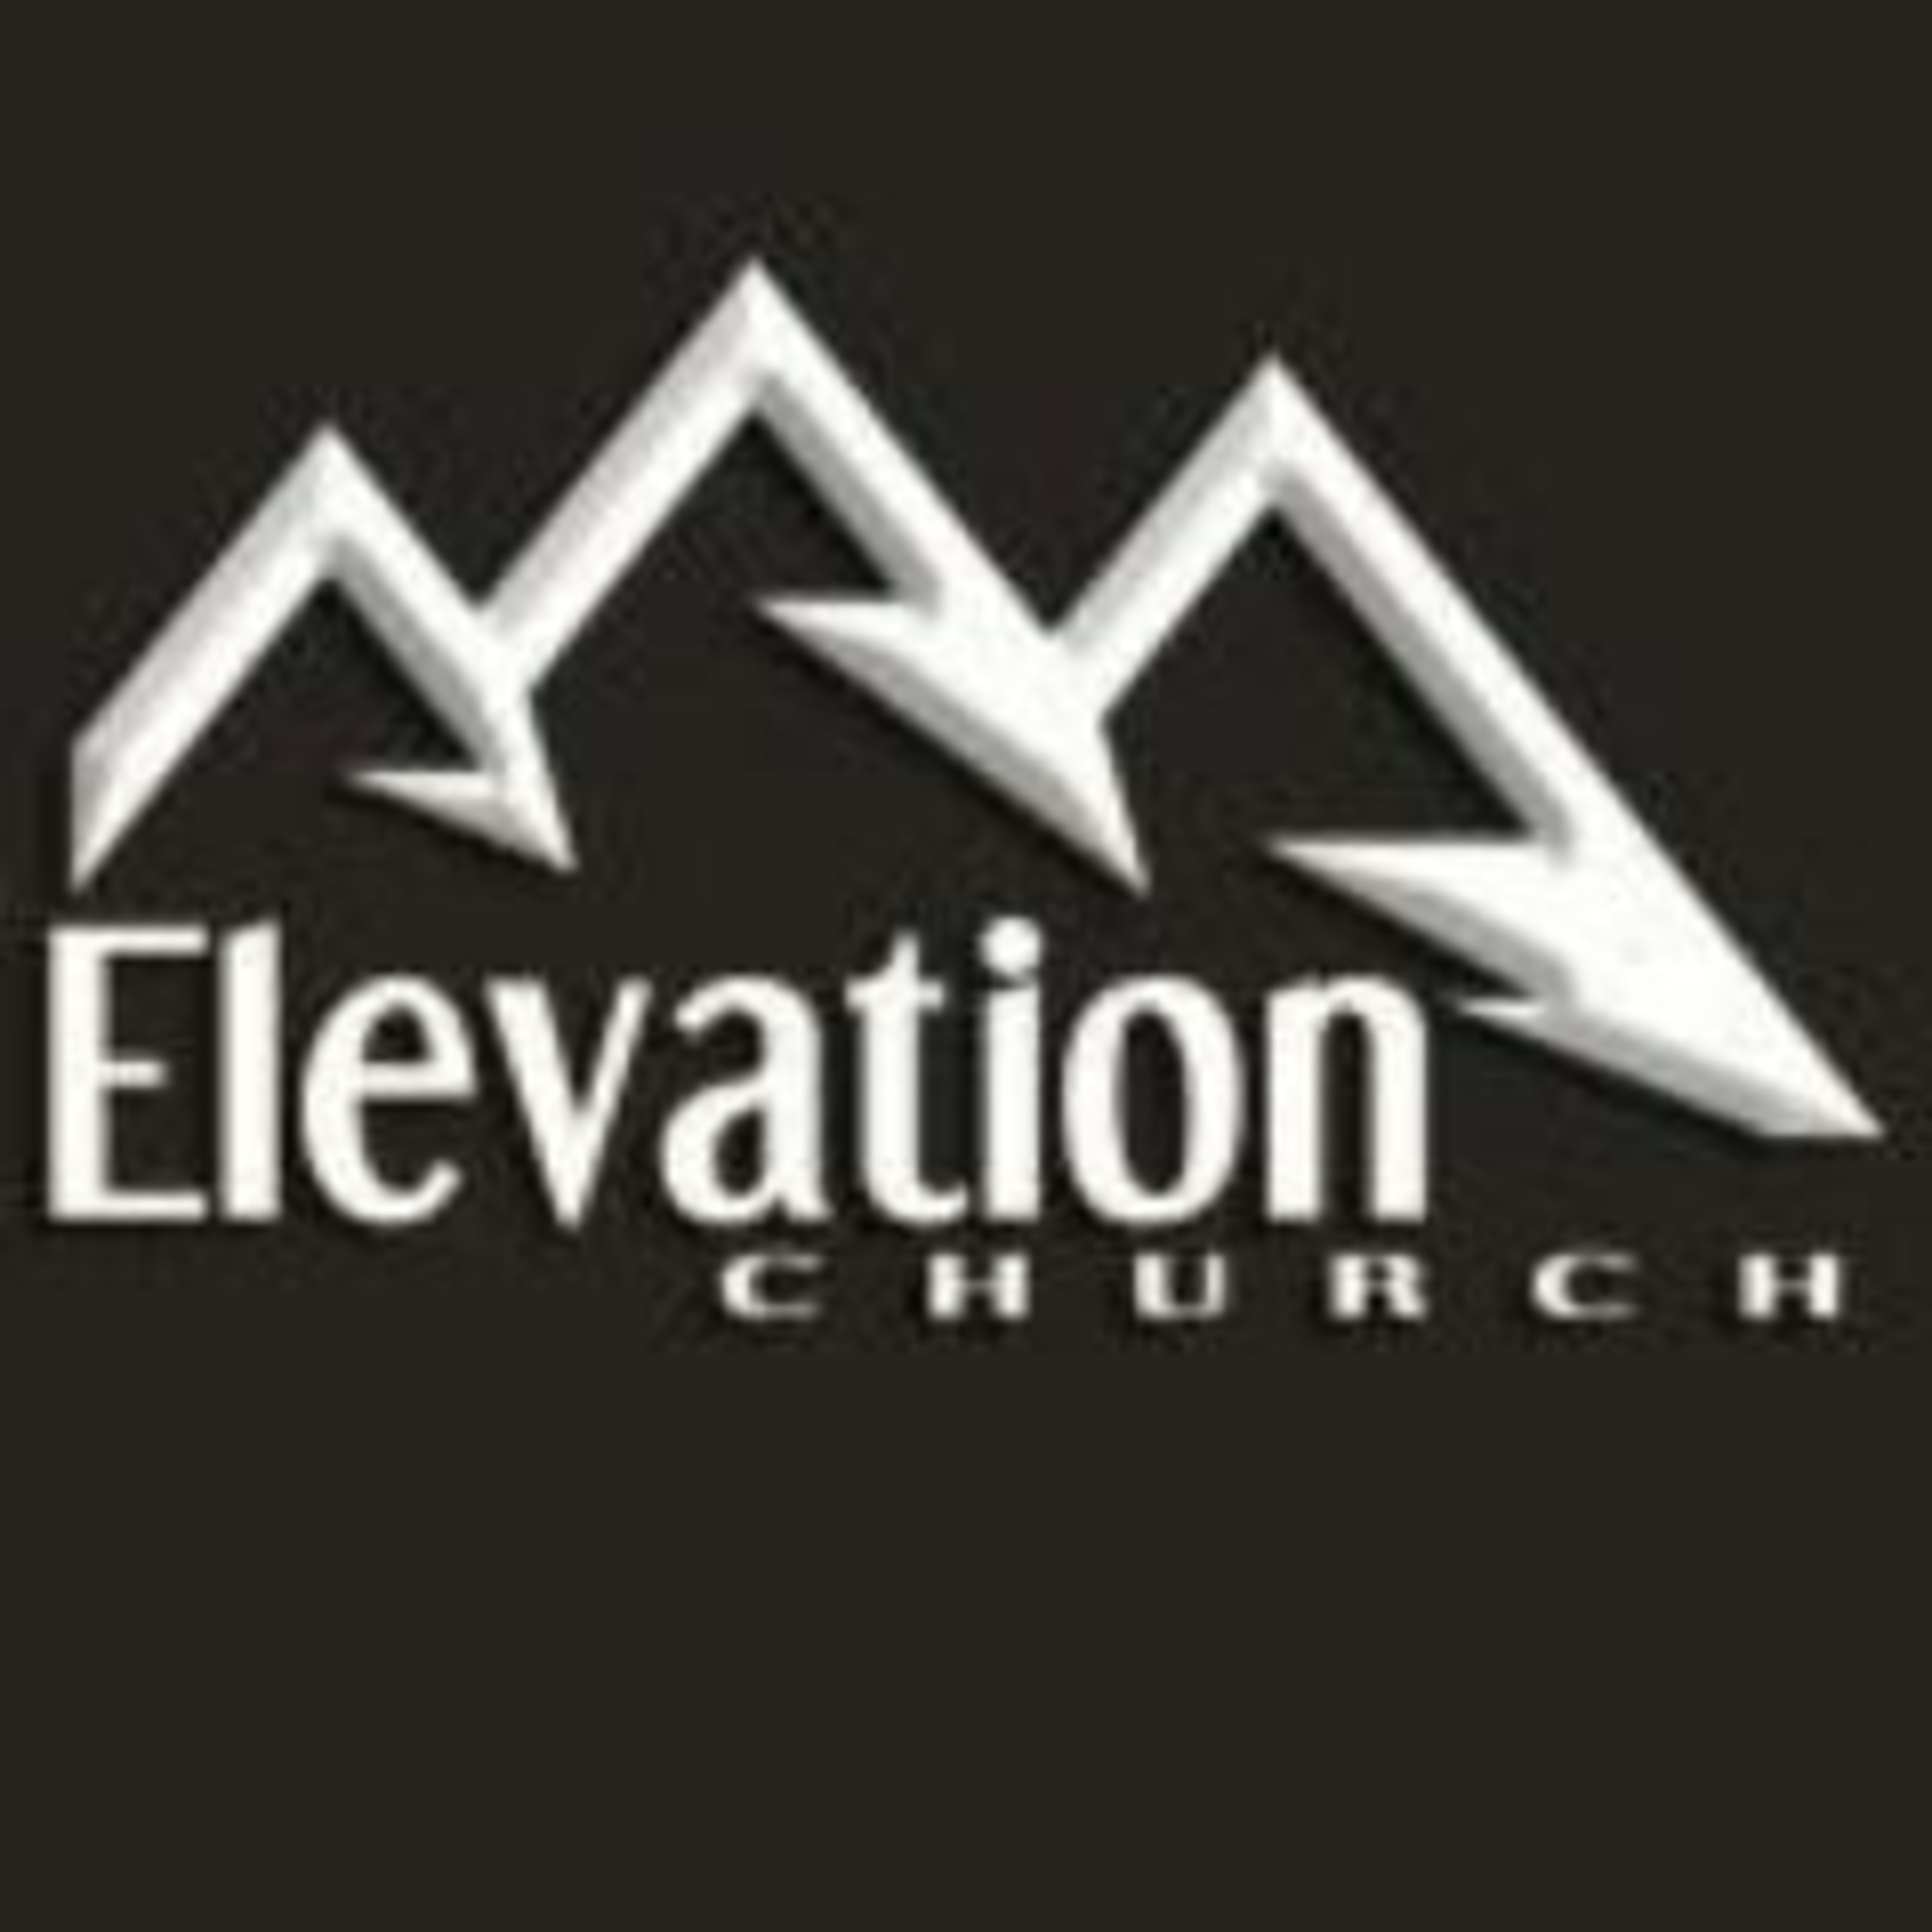 Elevation Church WI